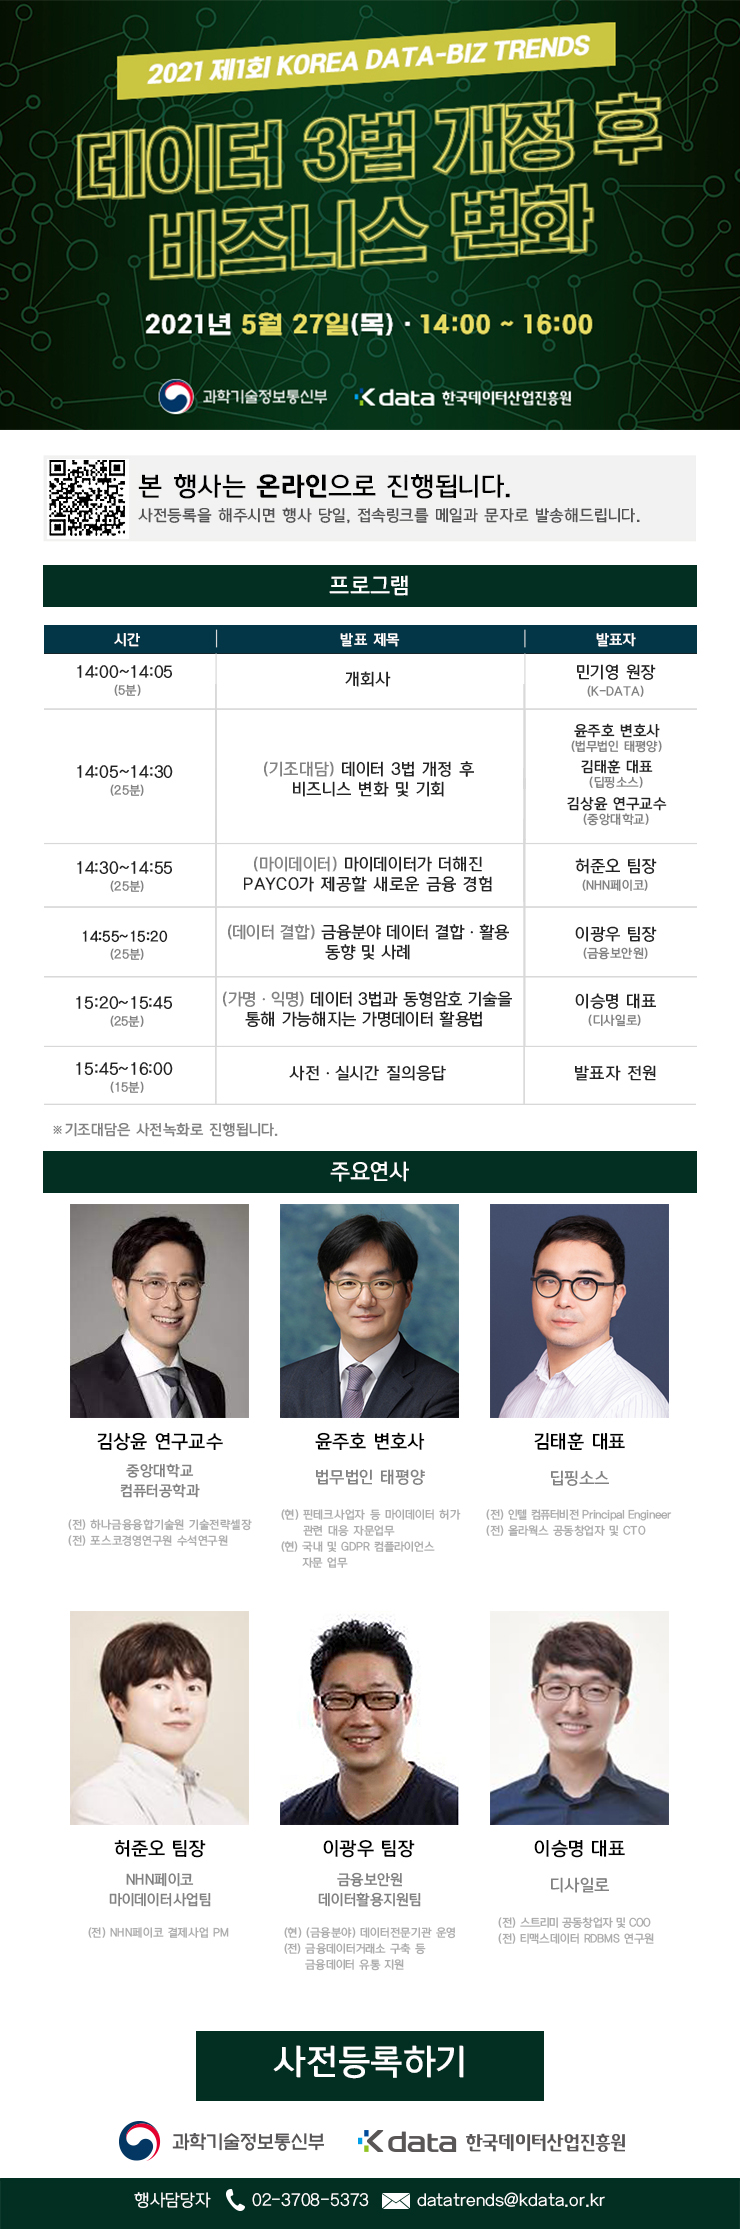 [한국데이터산업진흥원] 2021 제1회 KOREA DATA-BIZ TRENDS 개최 안내